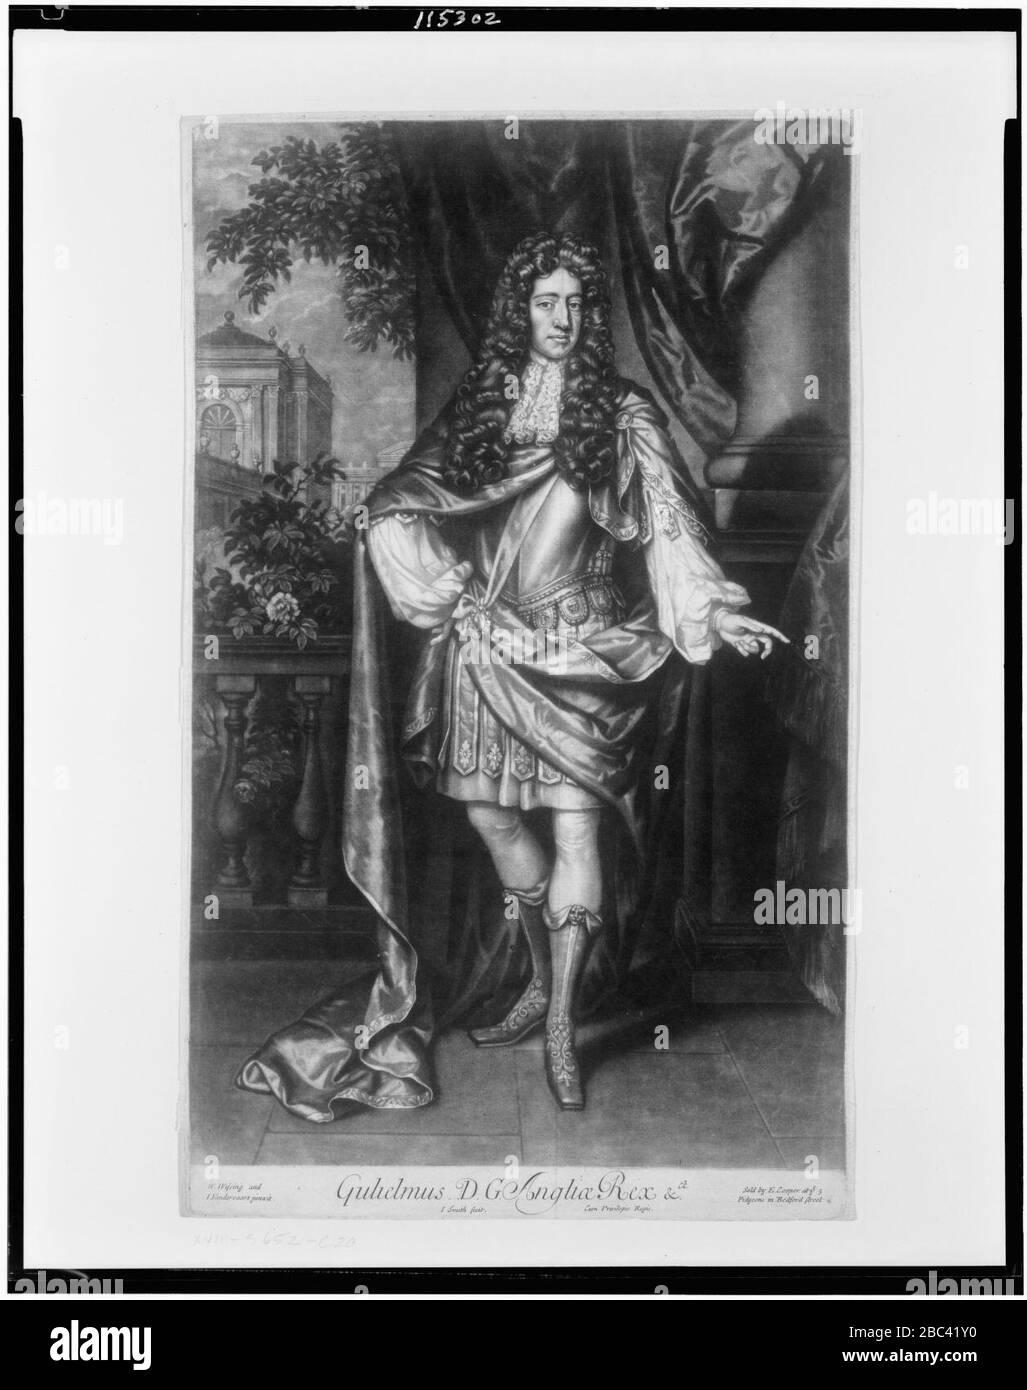 Gulielmus D.G. Angliae Rex etc. - W. Wissing and J. Vandervaart pinxit ; J. Smith fecit. Stock Photo